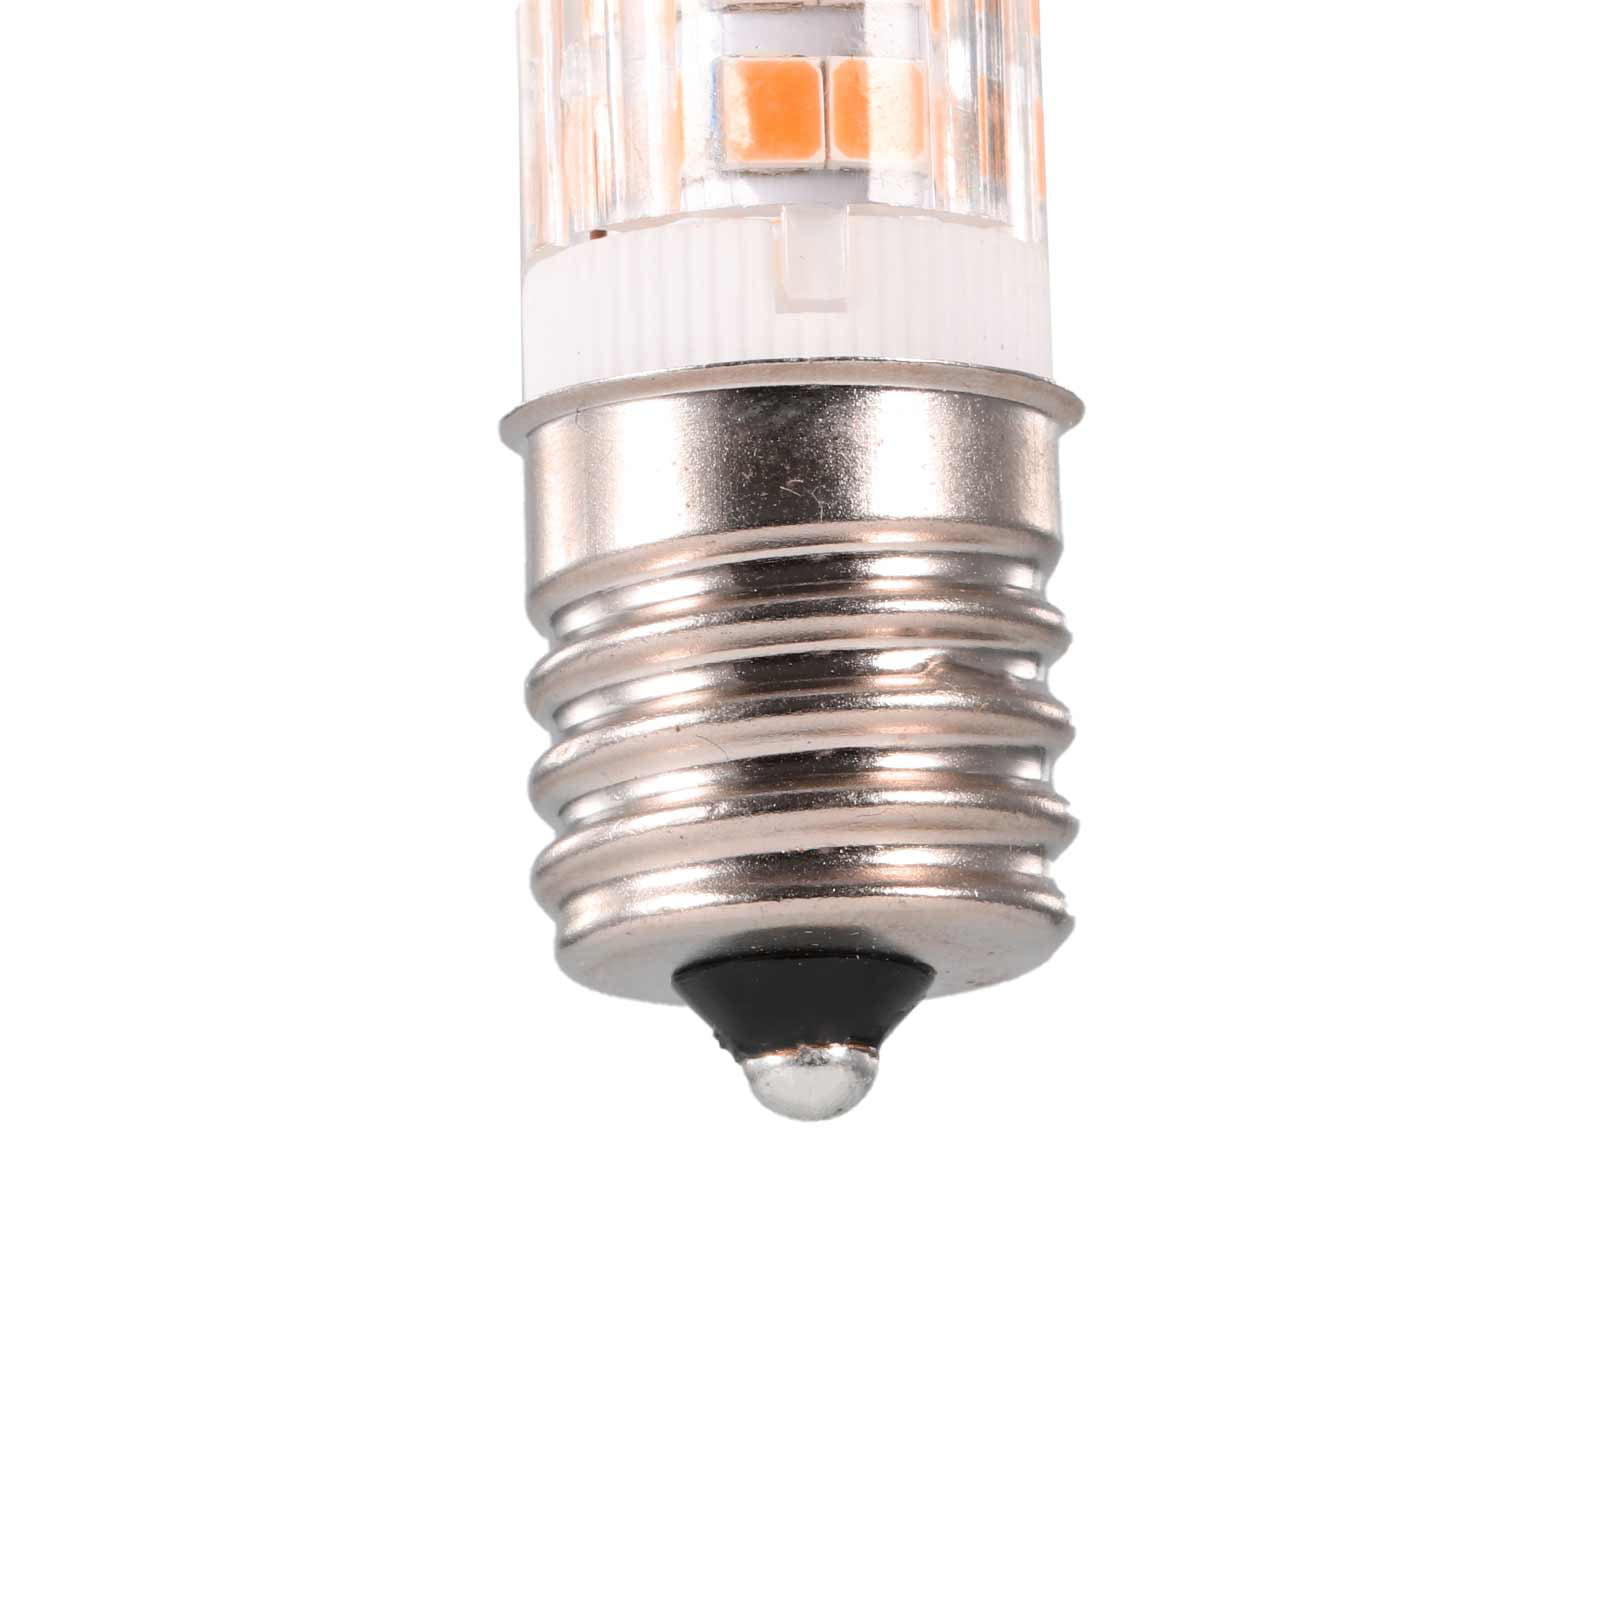 Not application E17 Led Light Bulb E17 Under Cabinet Light Dimming Light